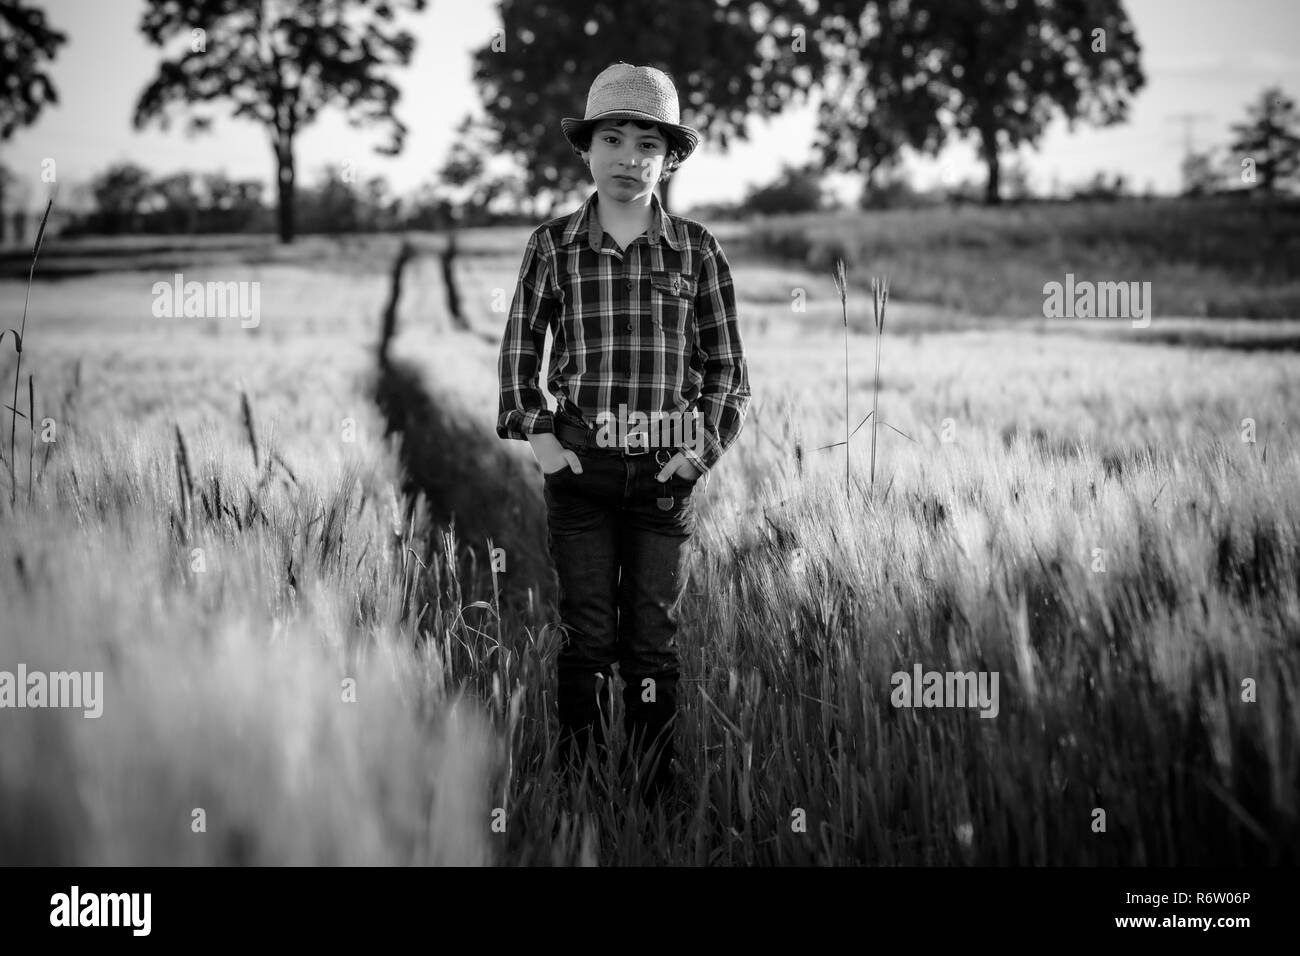 Un garçon en jeans et d'une chemise est debout dans le champ. Noir et blanc. Banque D'Images